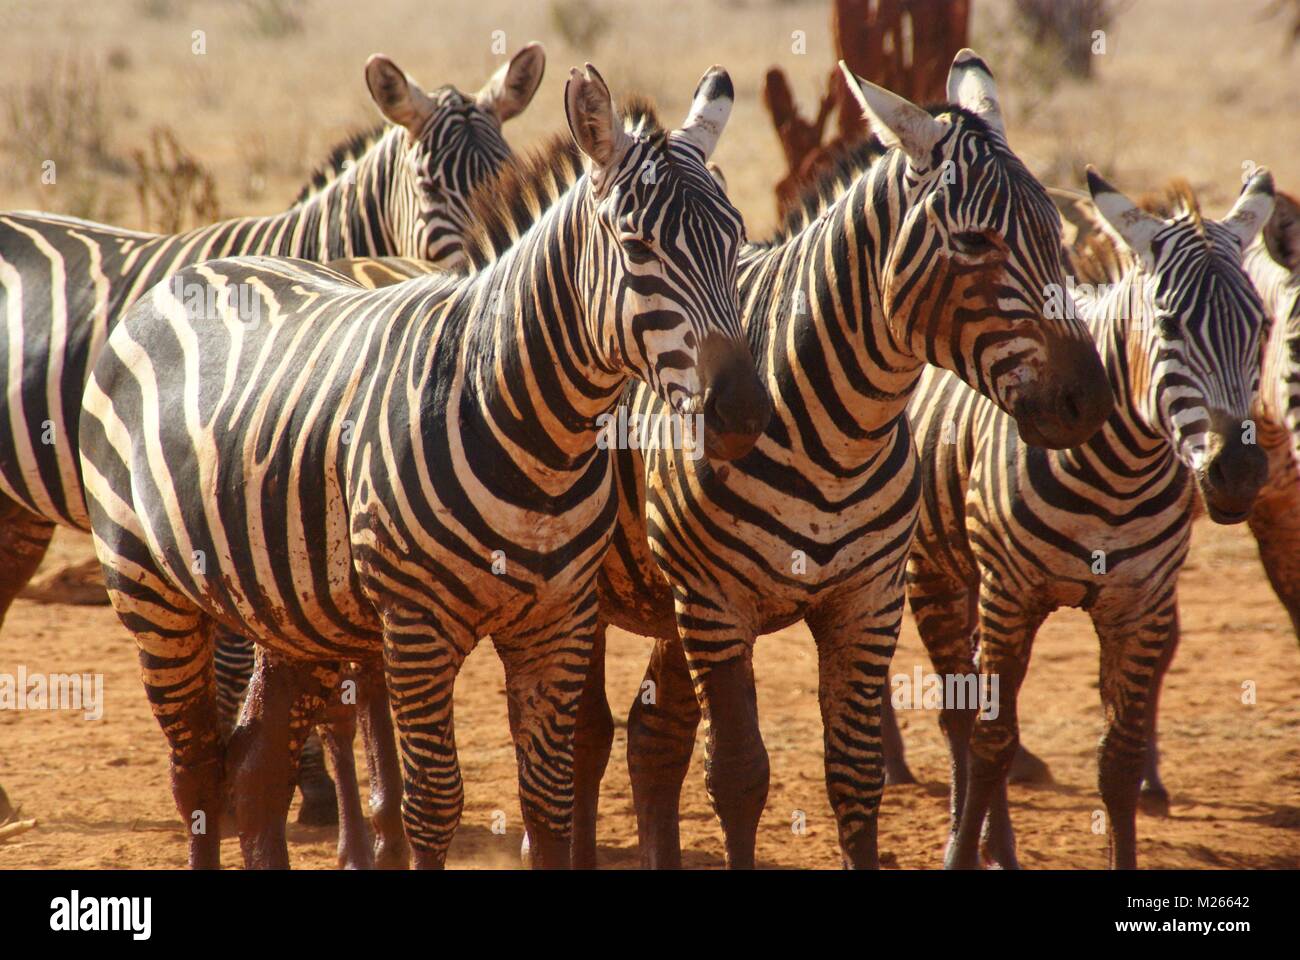 zebra group in kenya safari Stock Photo